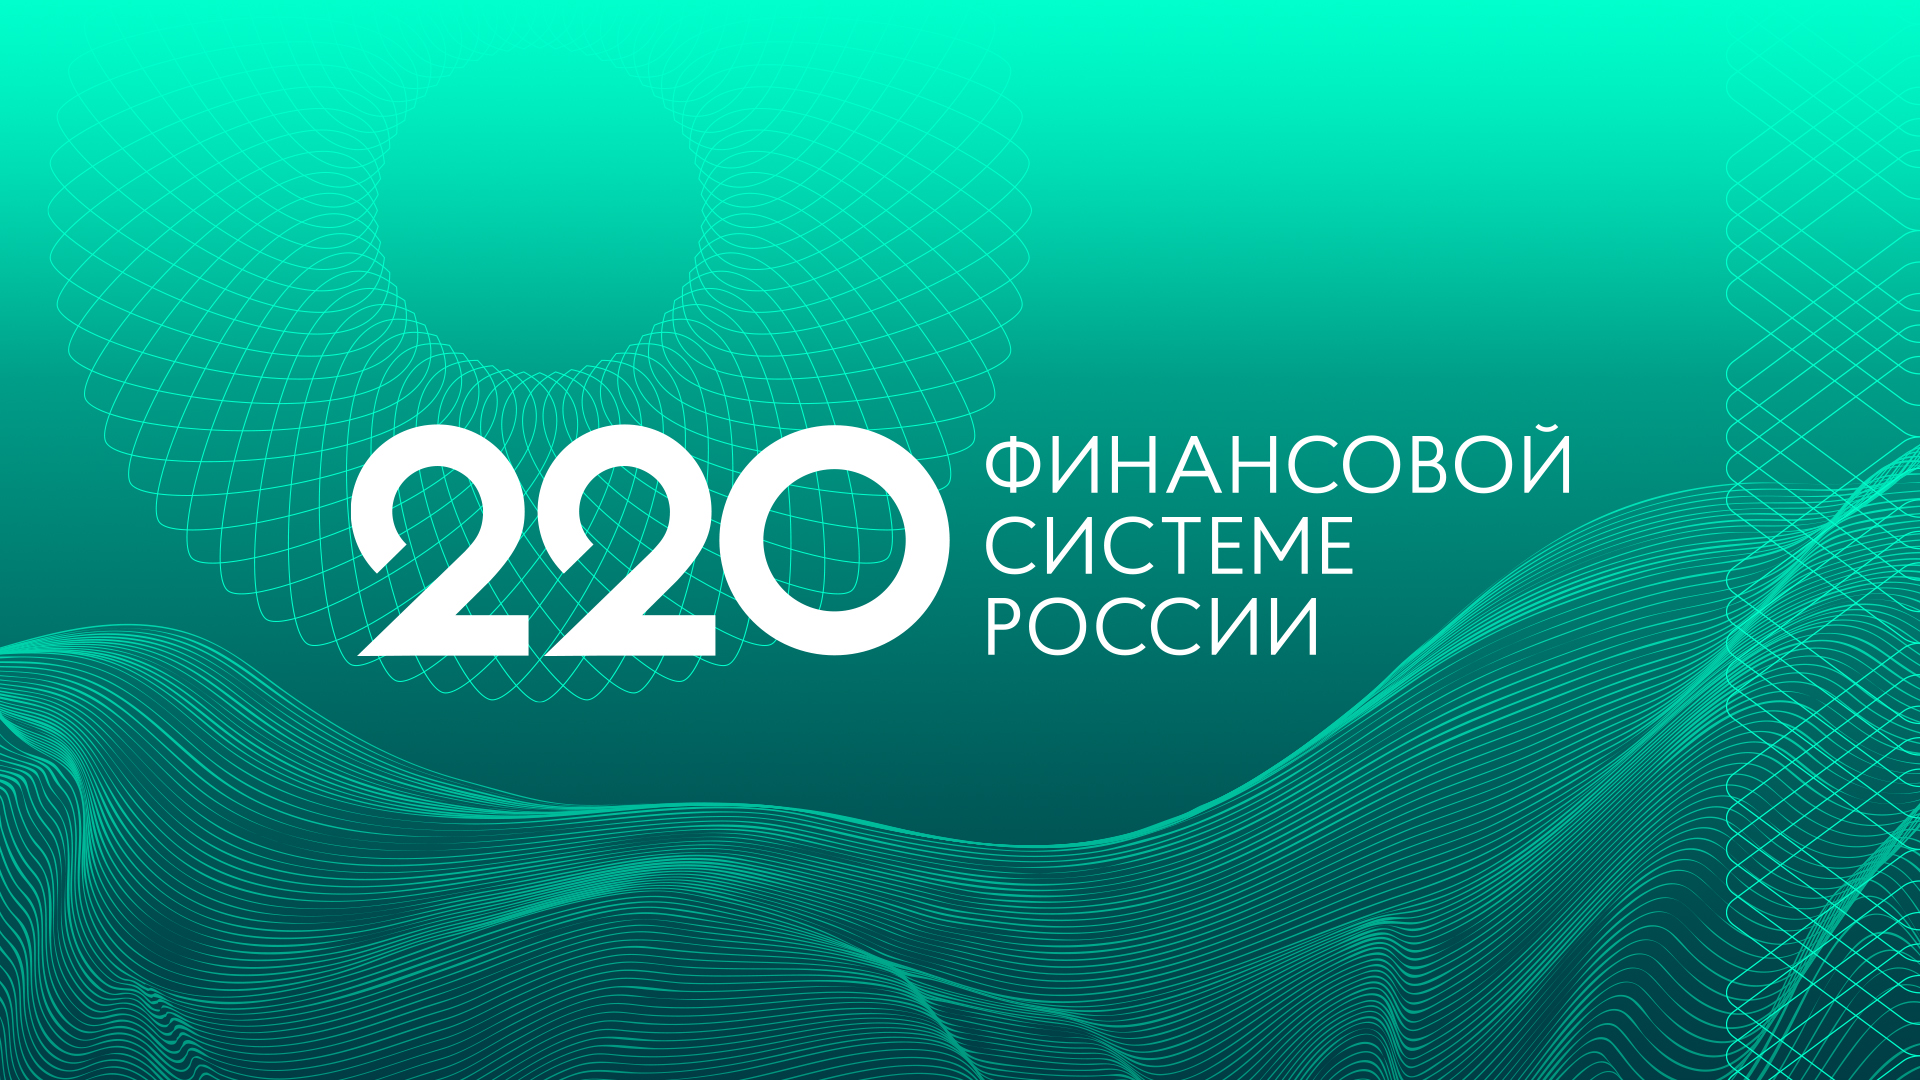 Айдентика 220 Финансовой системы России